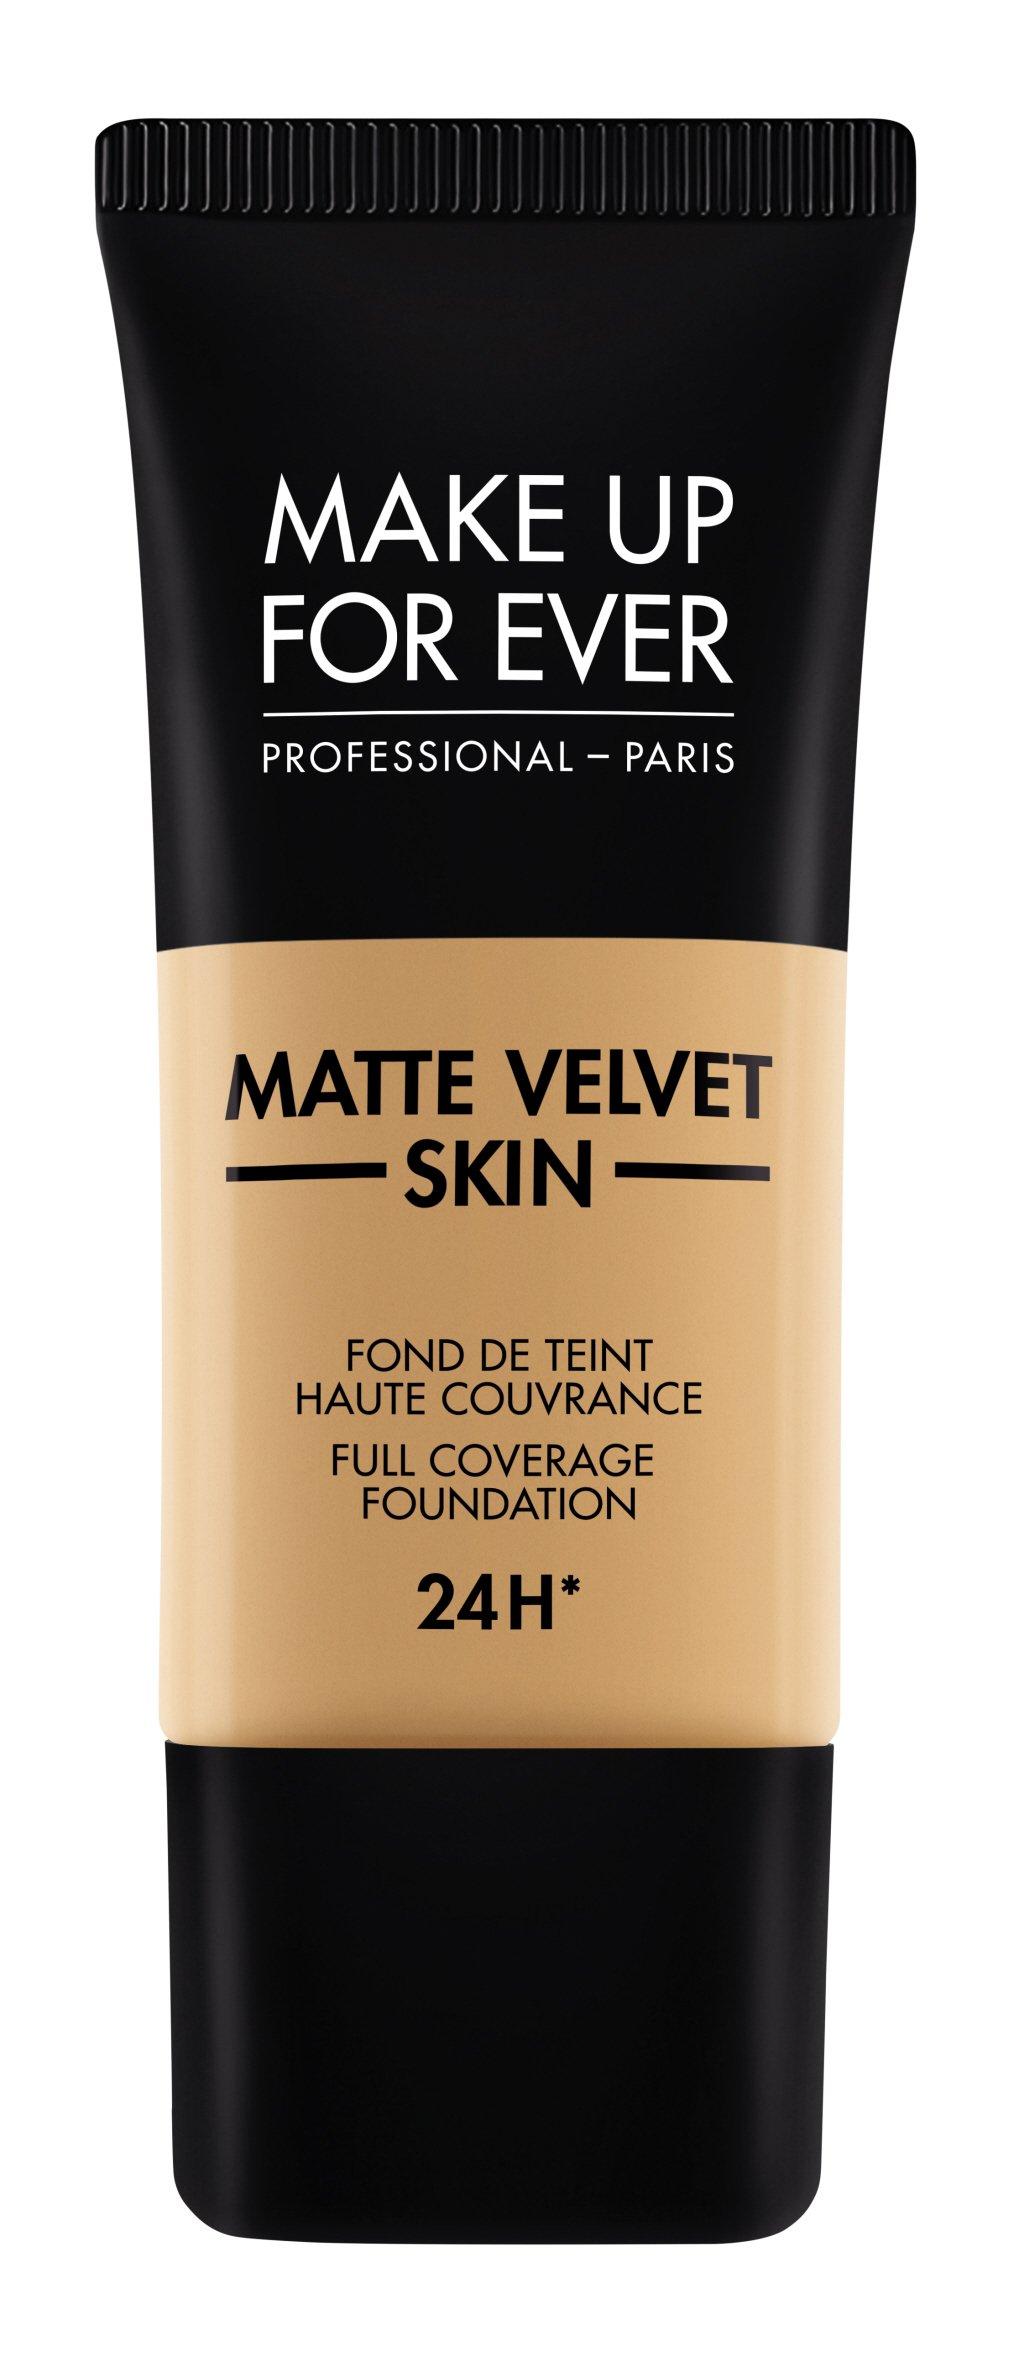 Make up For ever MAT VELVET Matte Velvet Skin Foundation 